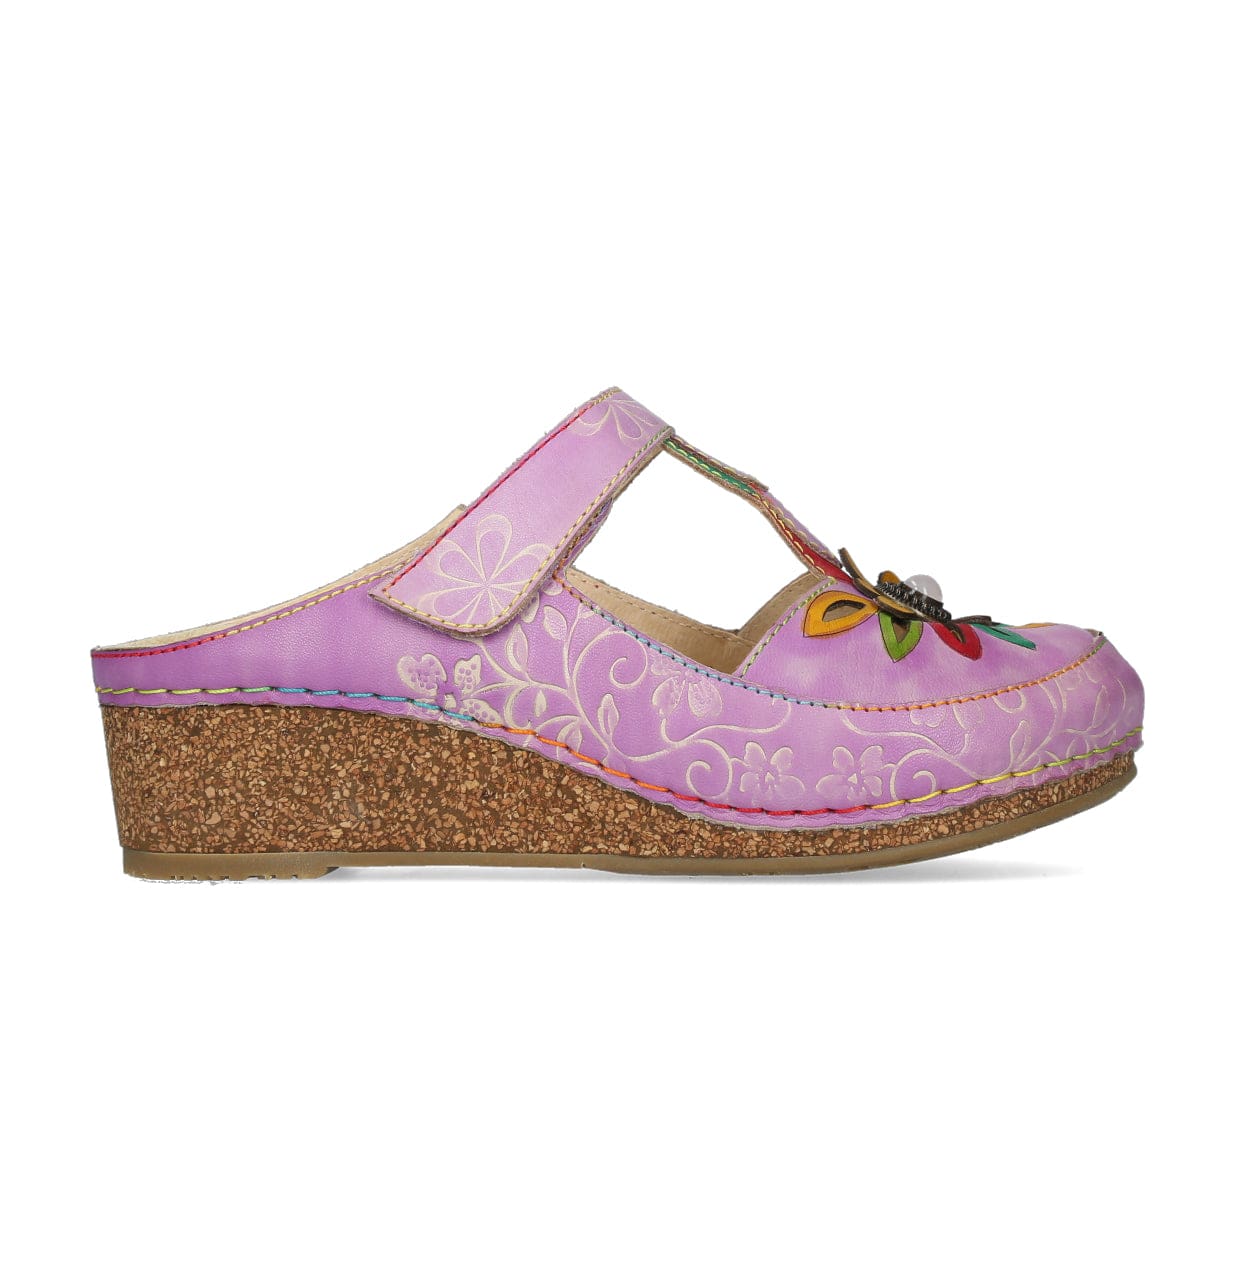 FACSCINEO 3122 shoes - 35 / Lilac - Mule